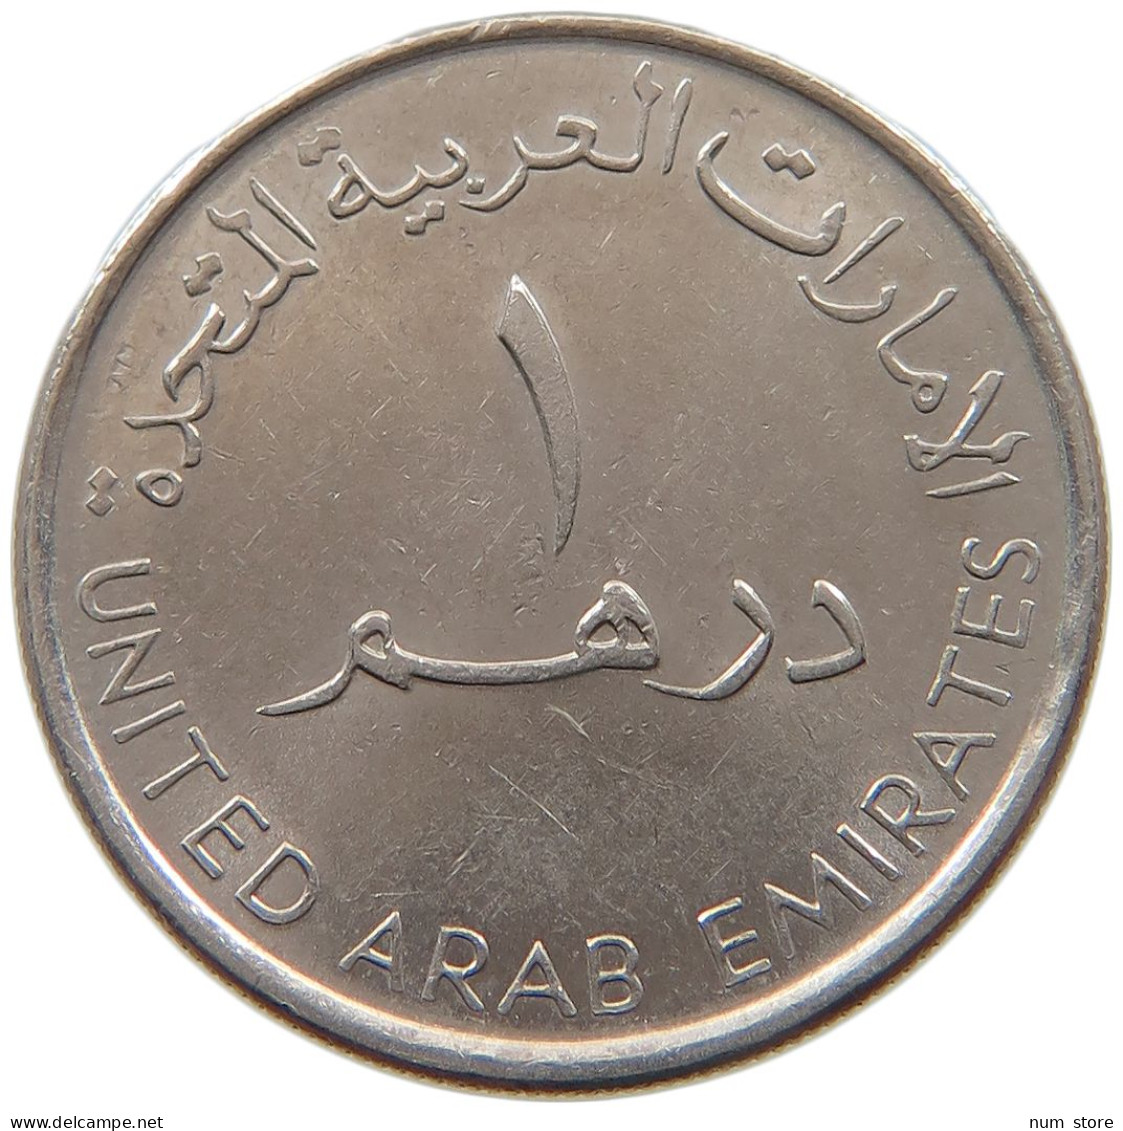 UNITED ARAB EMIRATES DIRHAM 2007  #a037 0225 - Ver. Arab. Emirate